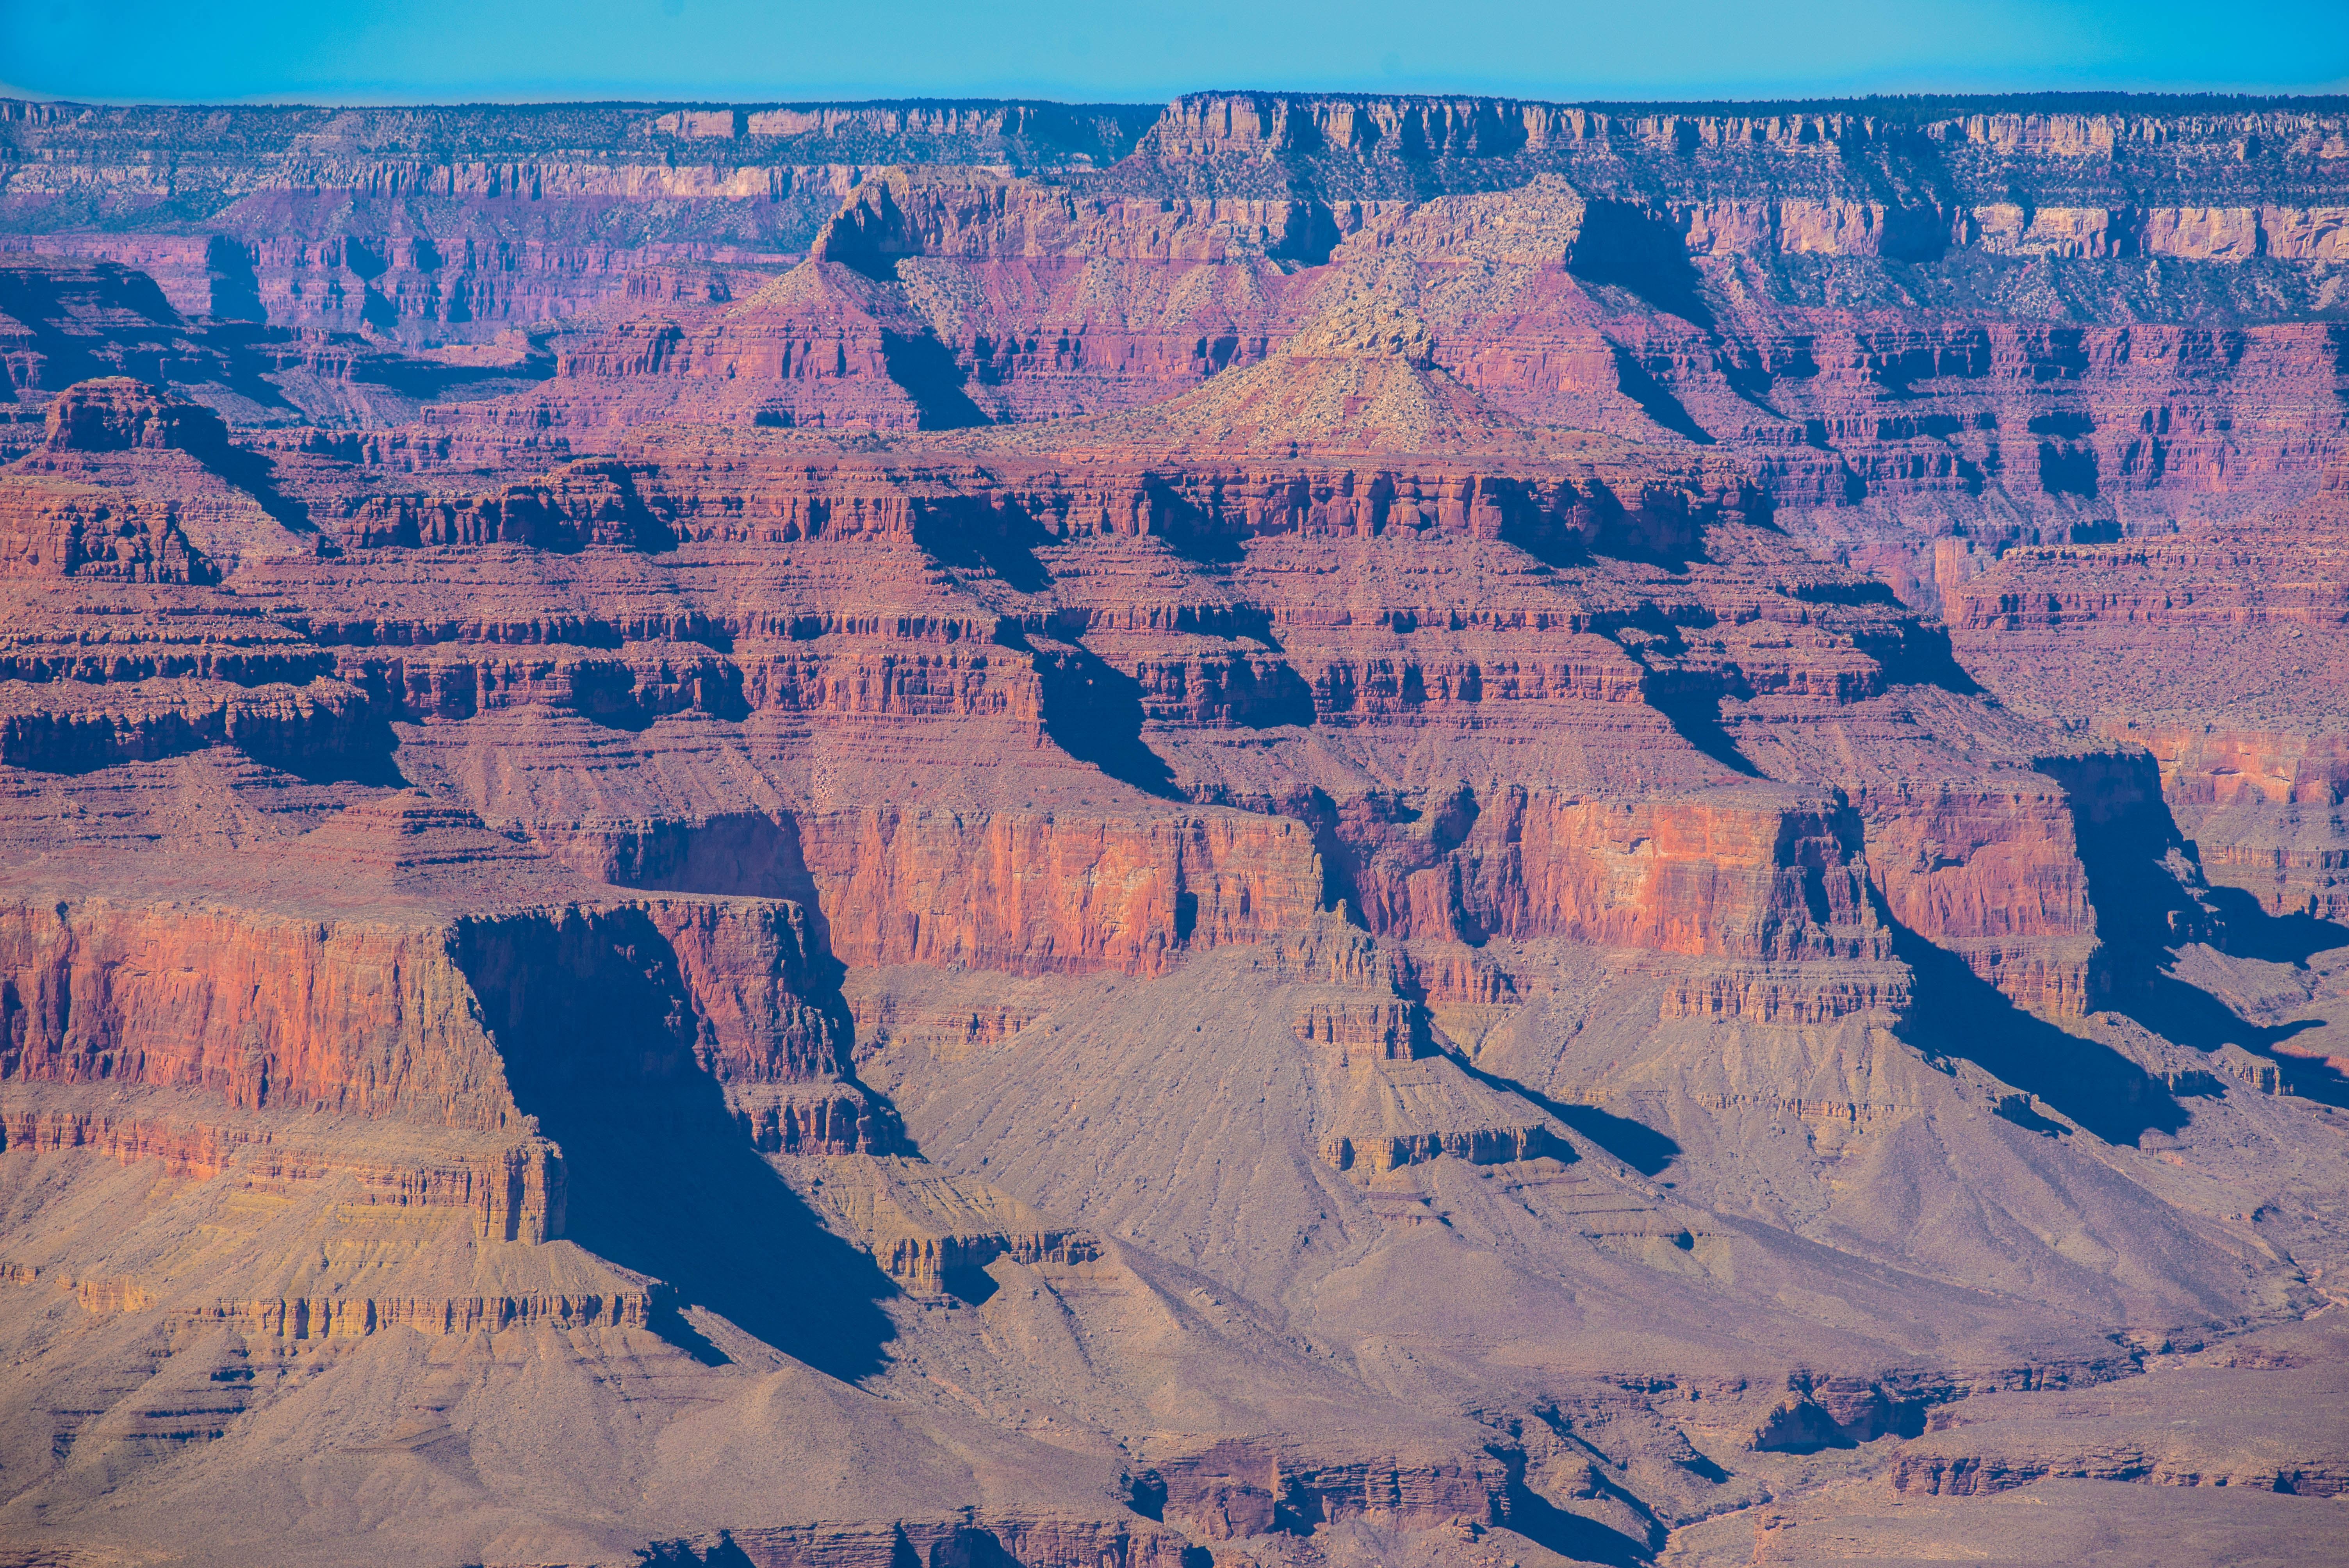 Desert Destinations: Grand Canyon National Park > Luke Air Force